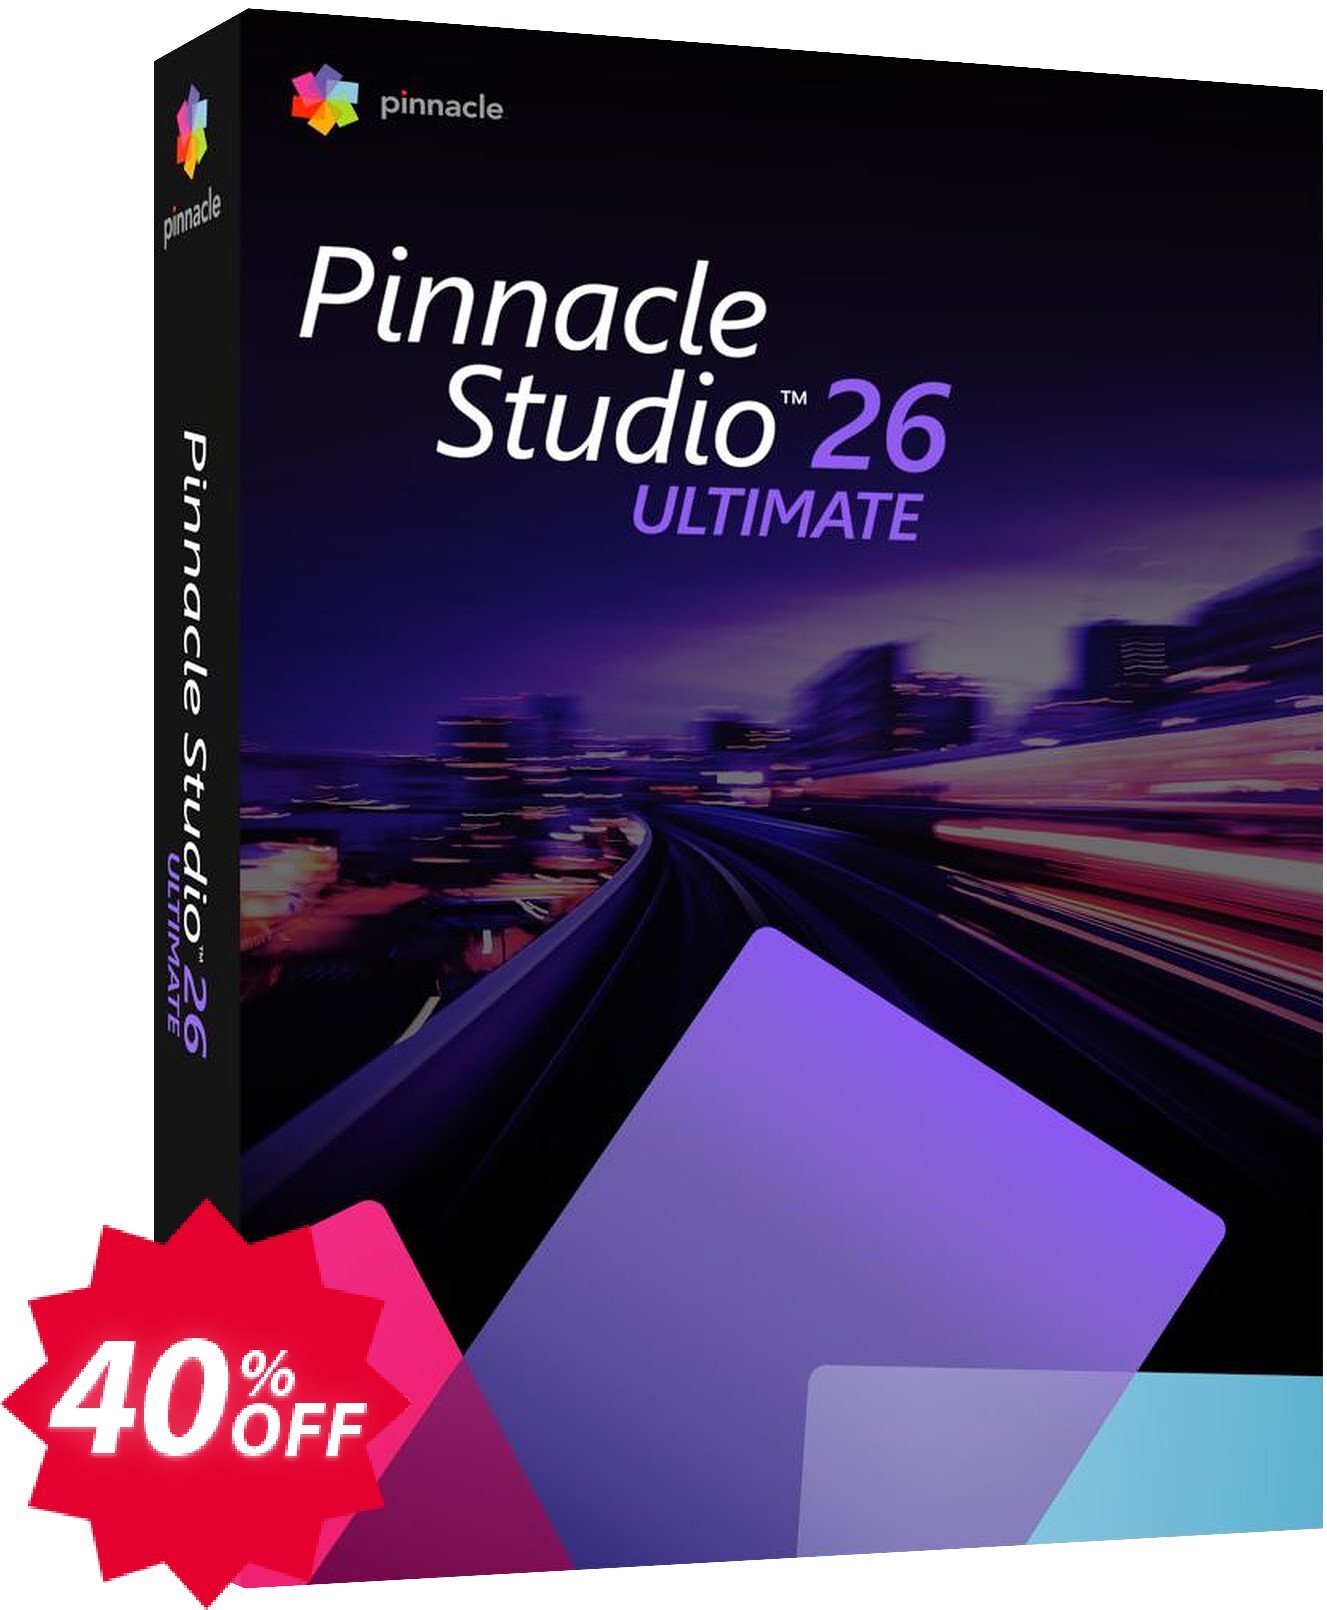 Pinnacle Studio 26 Ultimate Coupon code 40% discount 